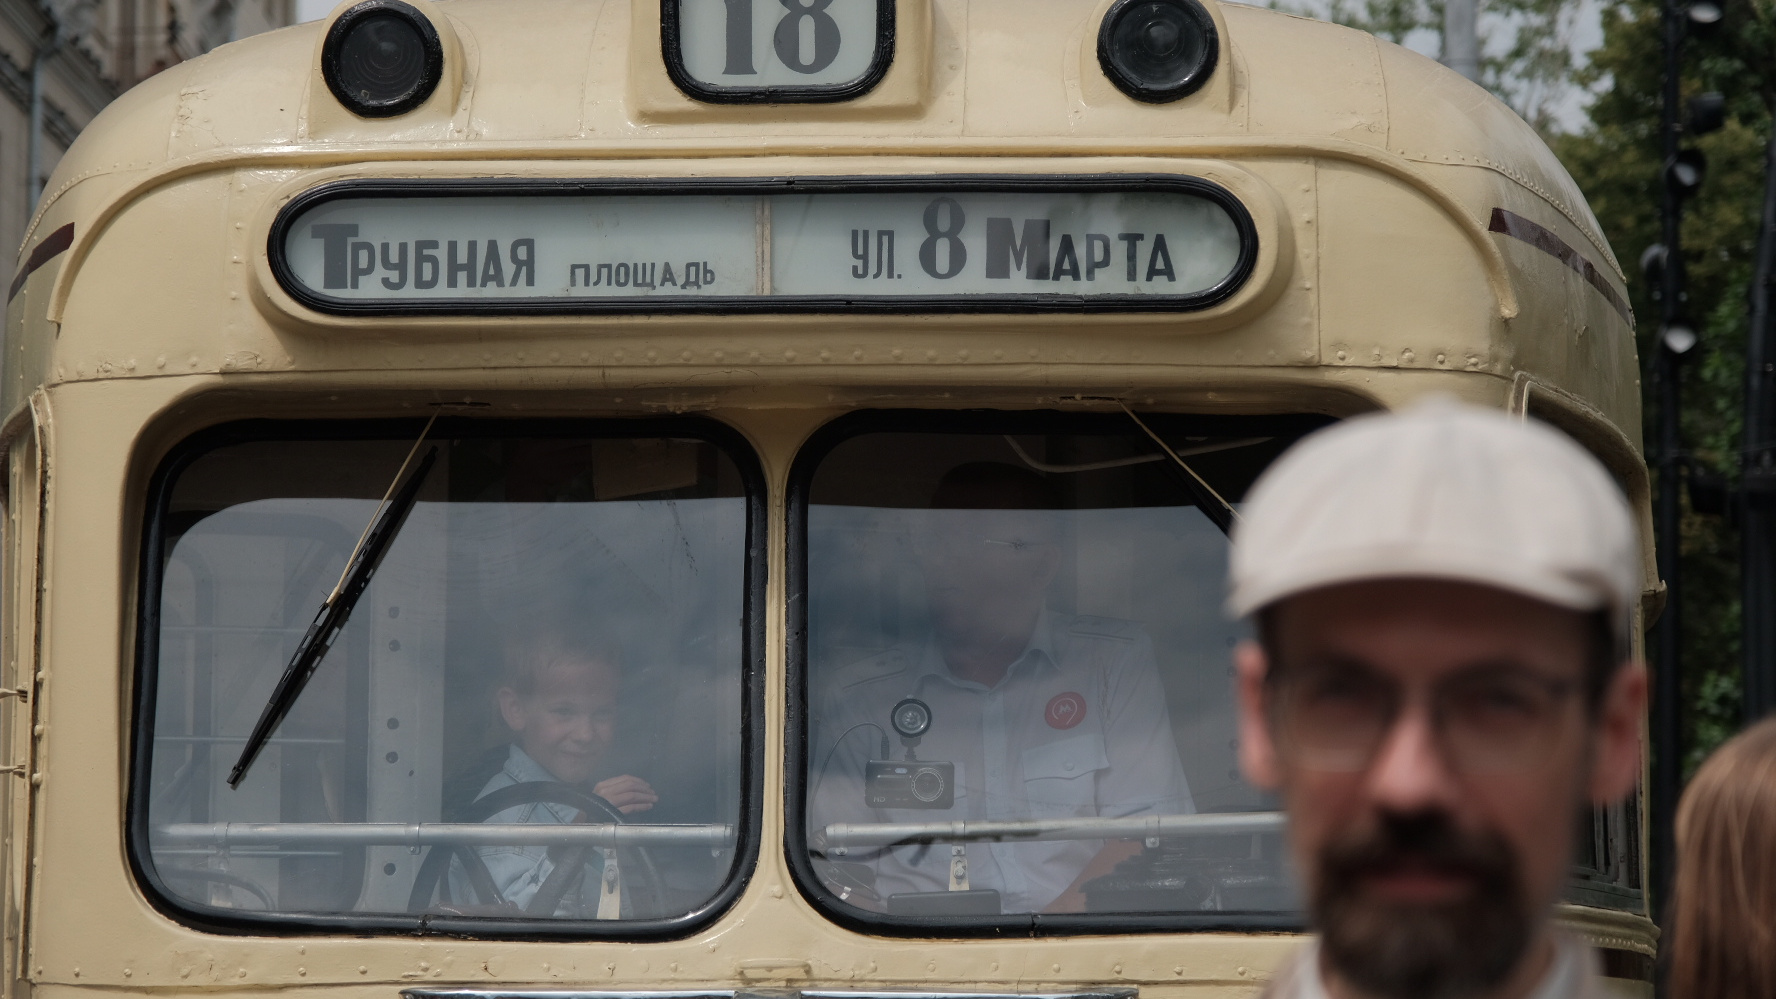 Трамваи разных эпох, бесплатная еда и толпы людей. Как в Москве прошел парад ретроавтомобилей